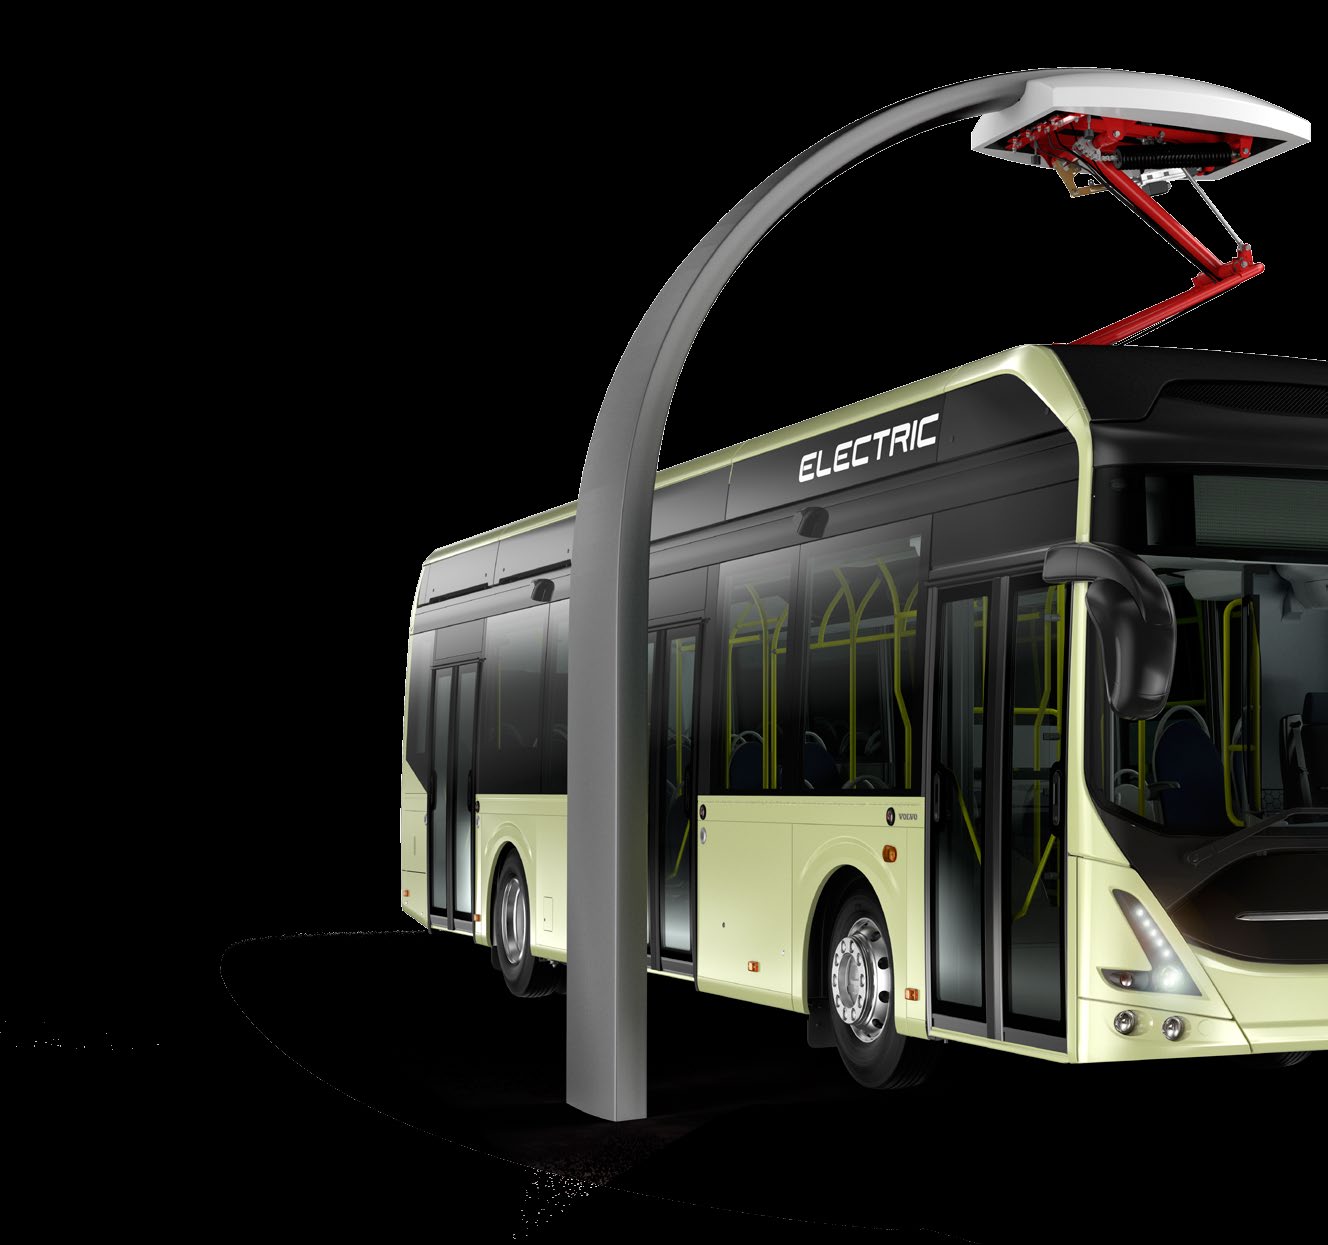 laadsysteem voor openbaar vervoer De Volvo 7900 Electric is zoveel meer dan een elektrische bus. Het is een totaal nieuwe mogelijkheid om uw openbaar vervoer, en uw hele stad, te ontwikkelen.